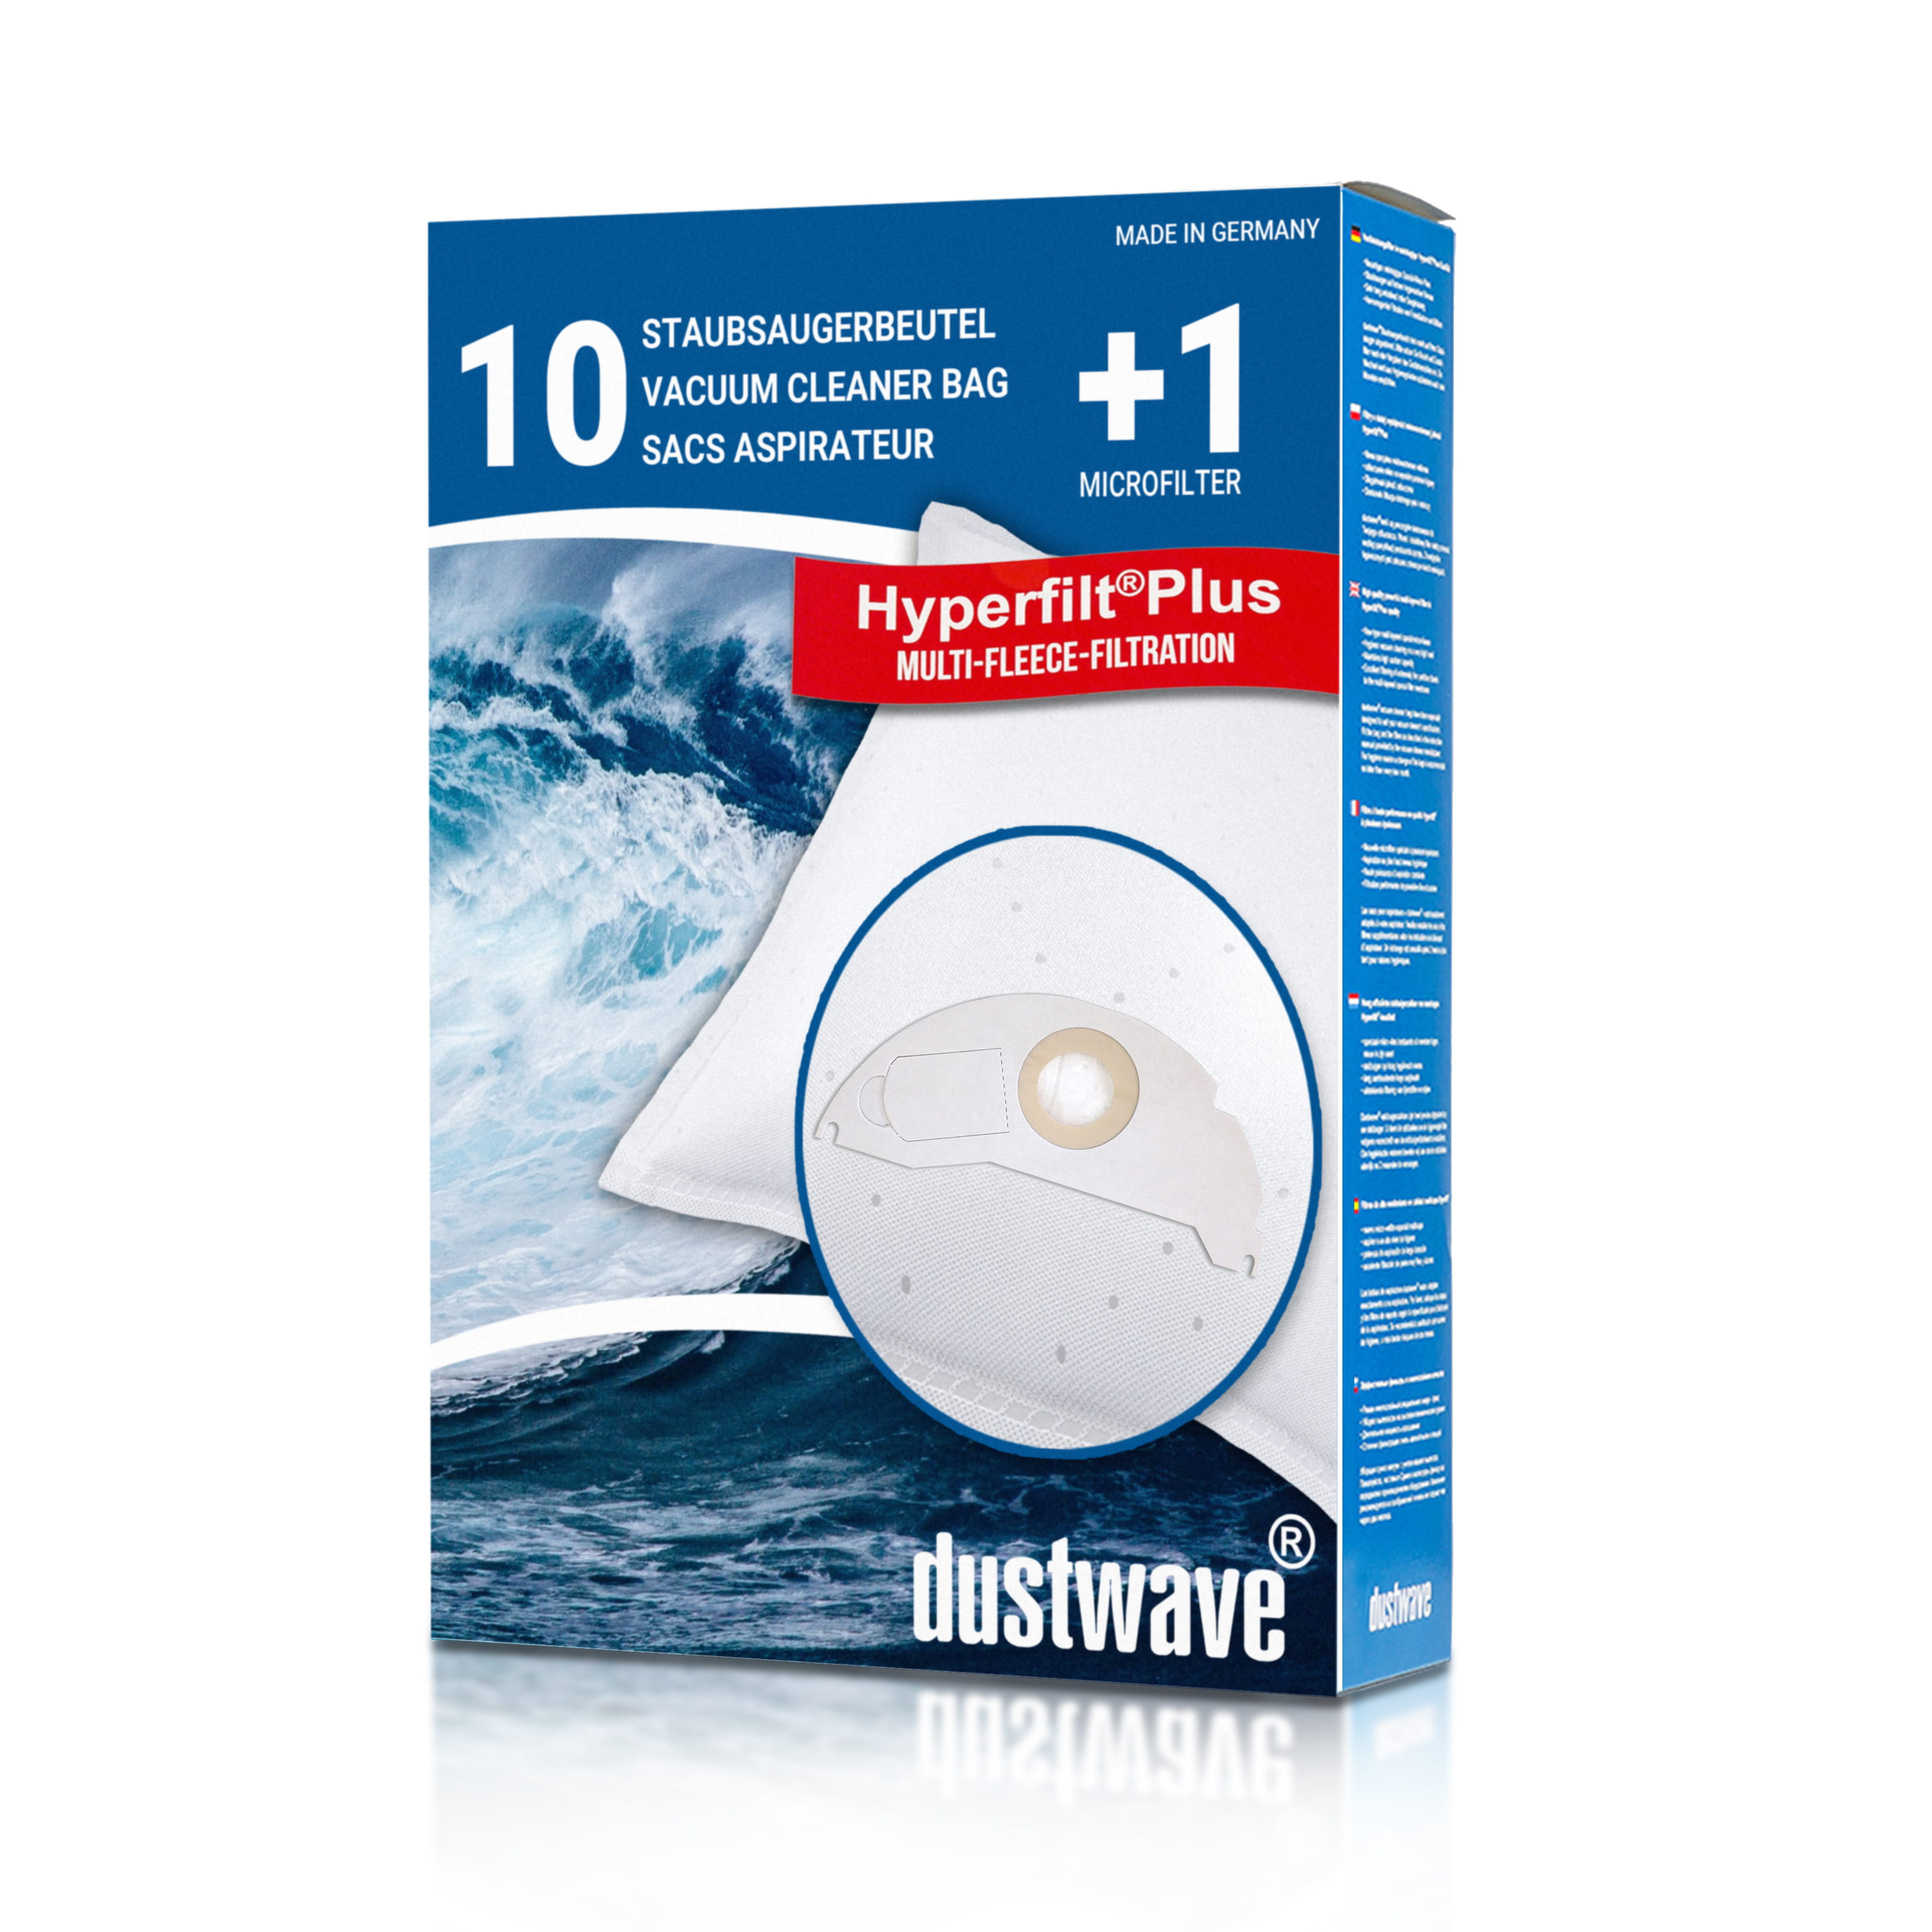 Dustwave® 10 Staubsaugerbeutel für Hoover BD S4125011 - hocheffizient, mehrlagiges Mikrovlies mit Hygieneverschluss - Made in Germany